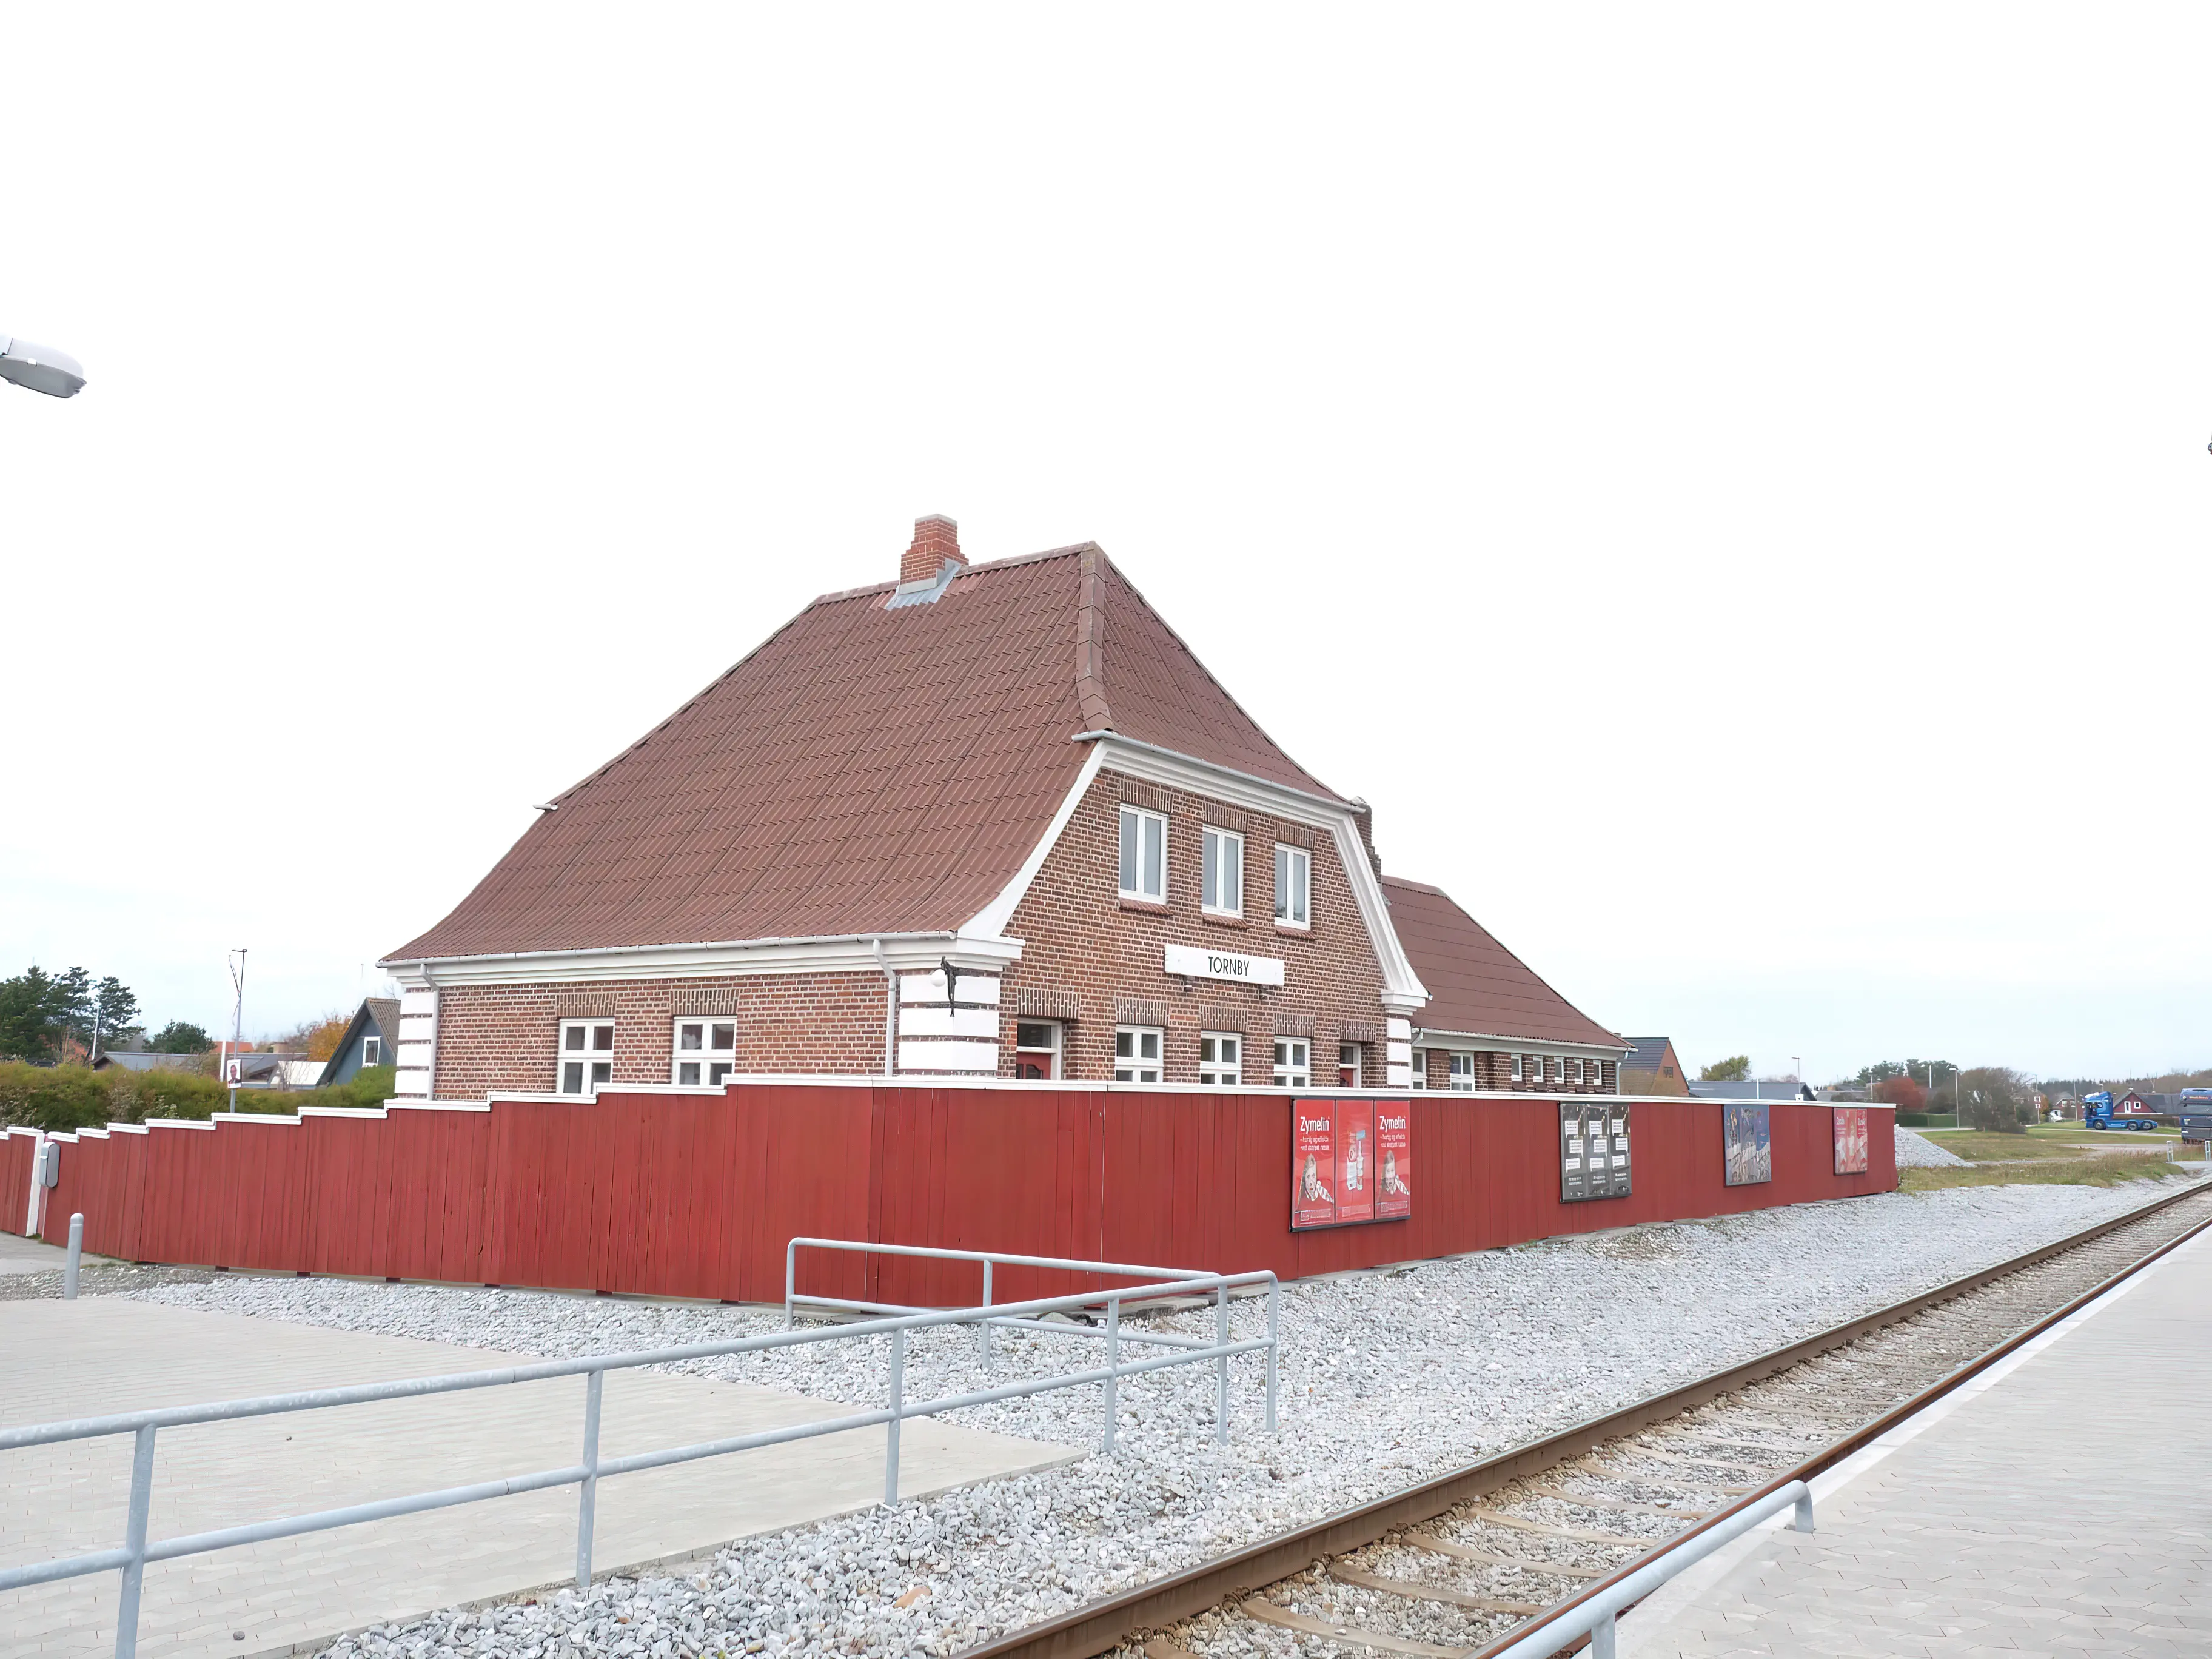 Billede af Tornby Station.